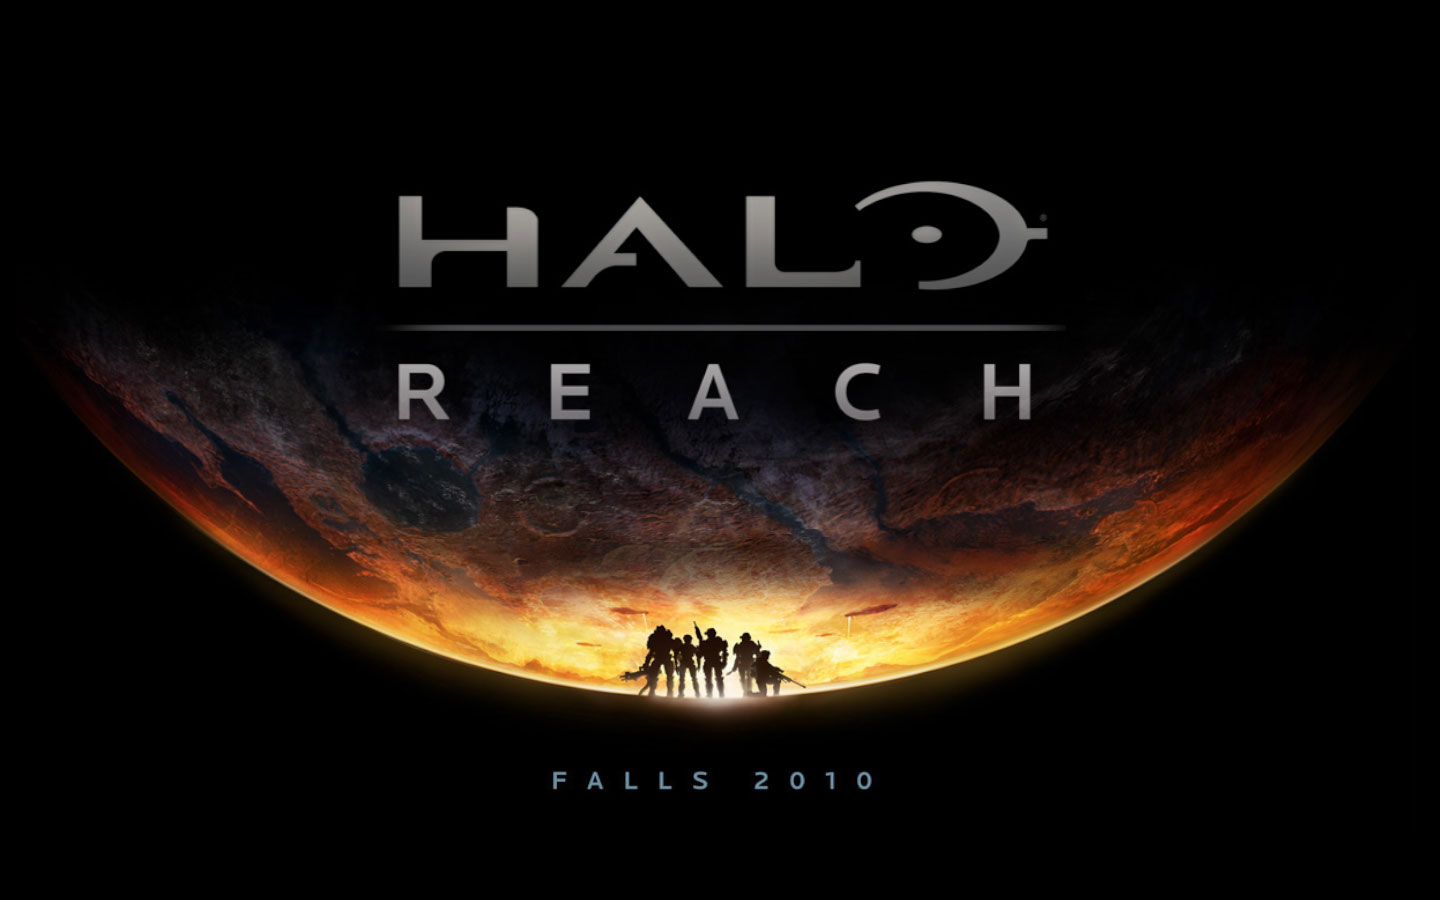 Imagen Halo Reach Wallpaper Jpg Halopedia